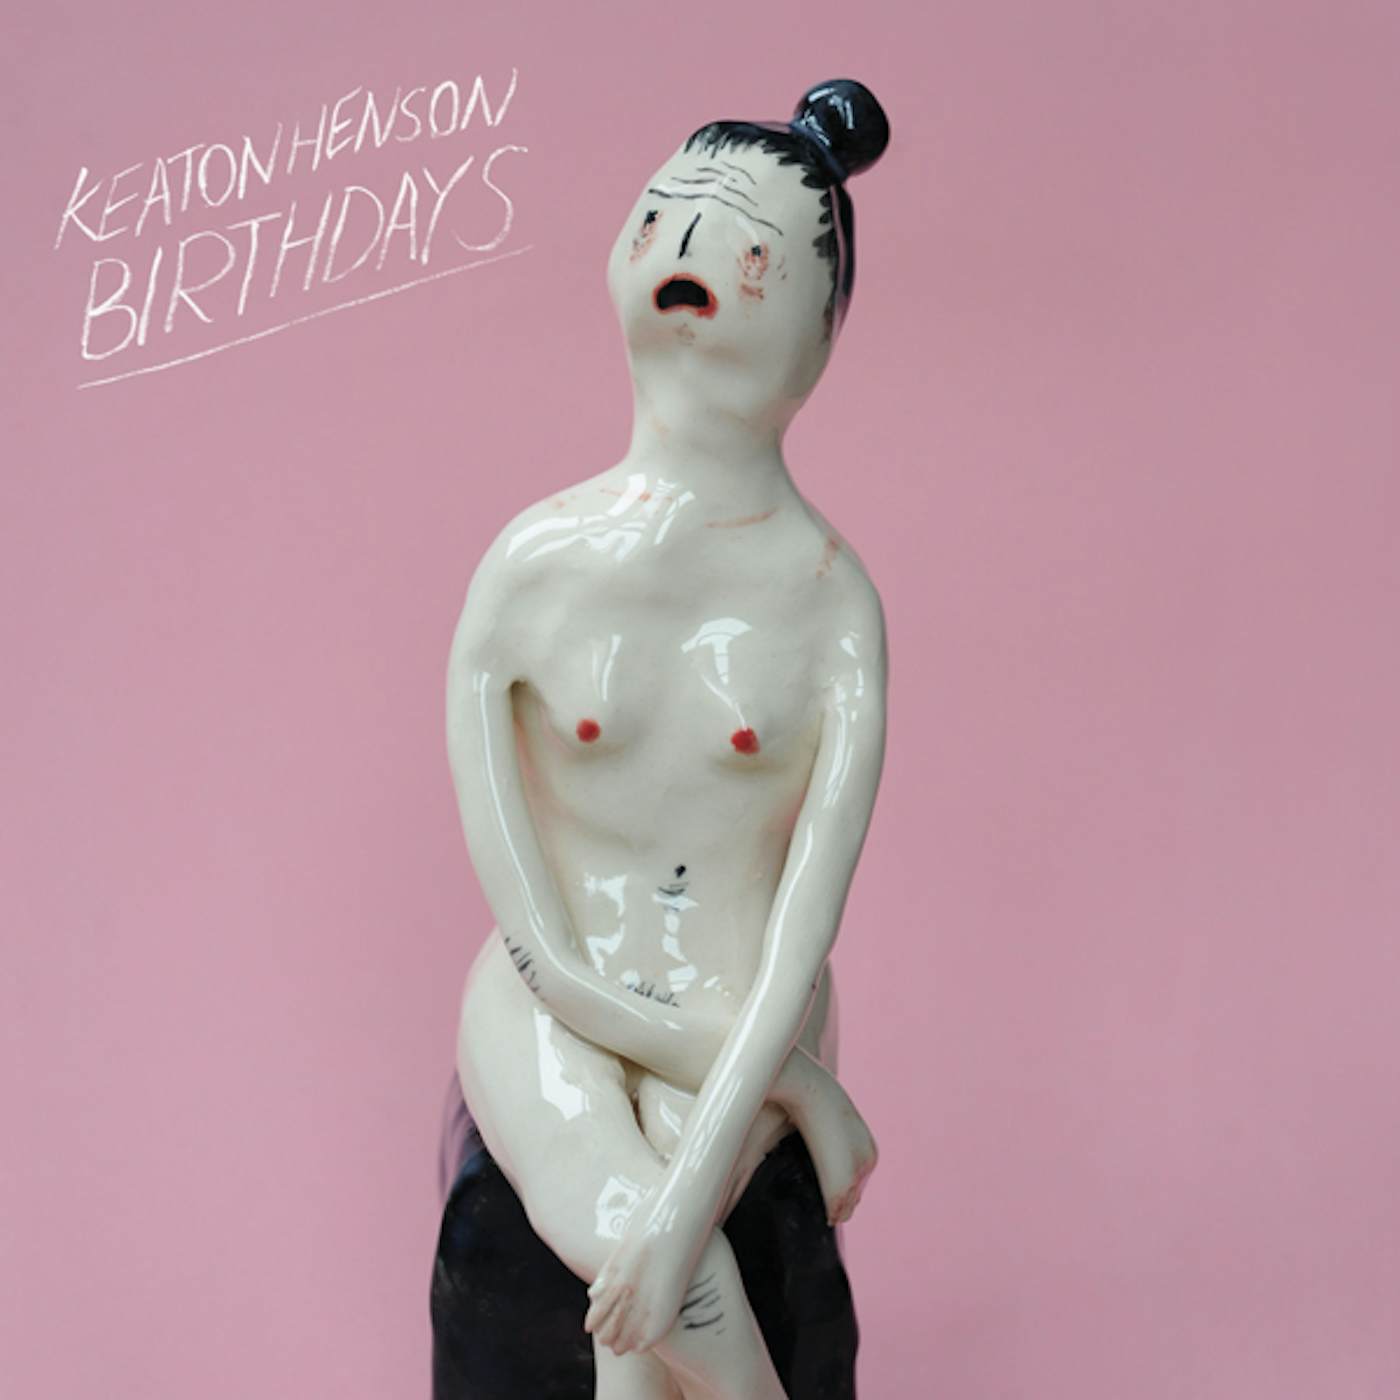 Keaton Henson Birthdays Vinyl Record